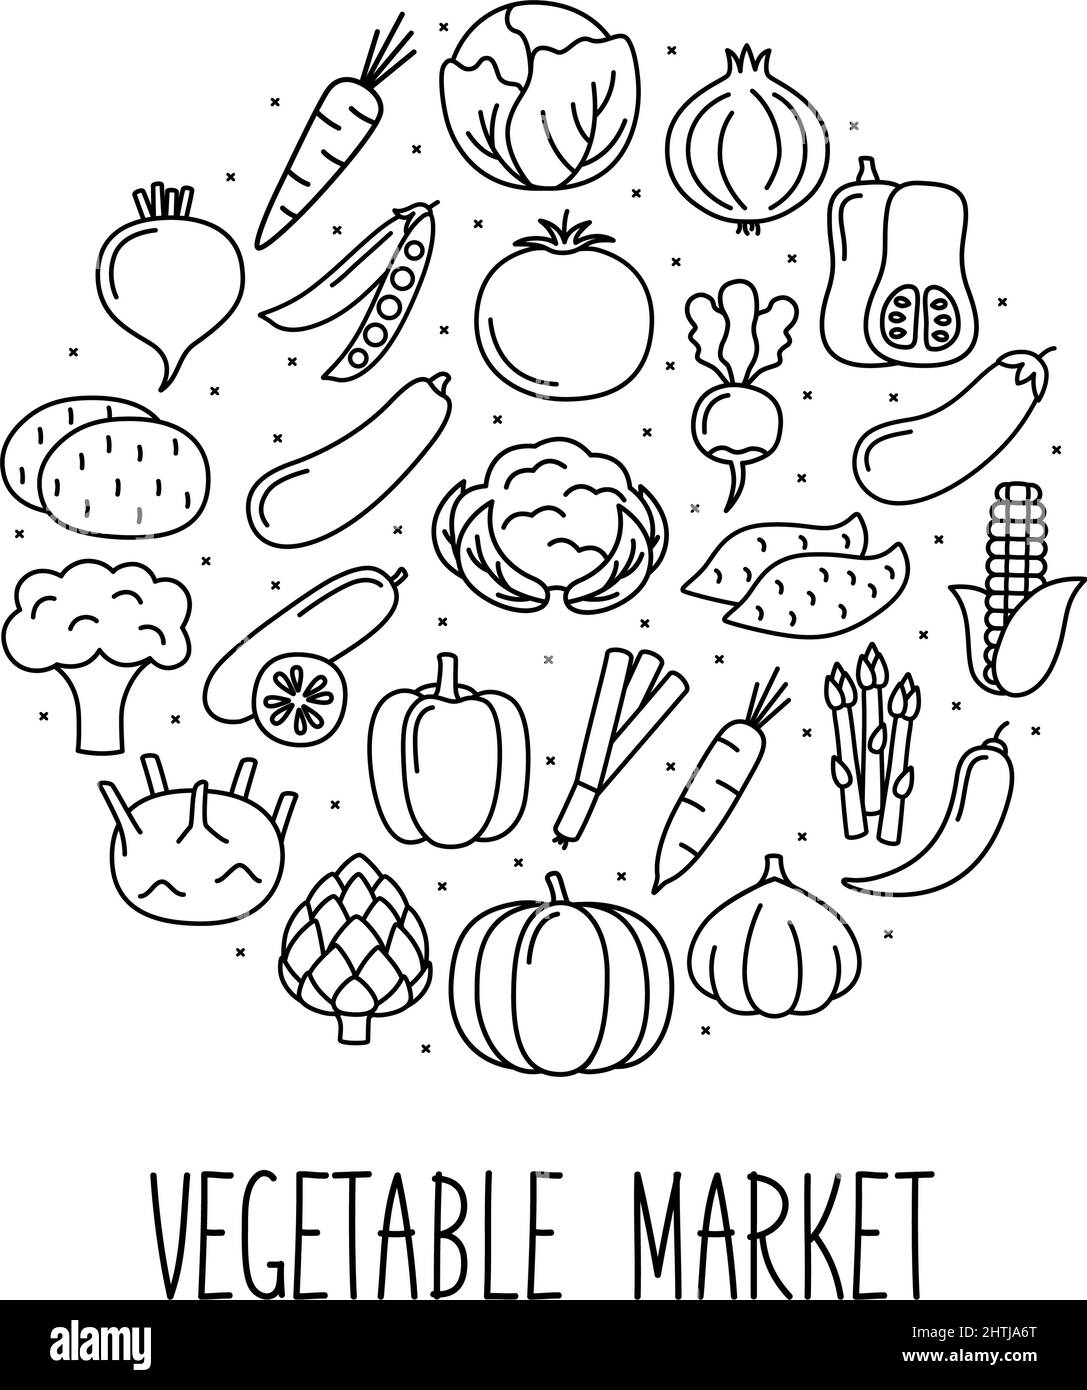 Bannière ronde avec icônes de légumes de style linéaire. Design pour le marché et le magasin, illustration vectorielle Illustration de Vecteur